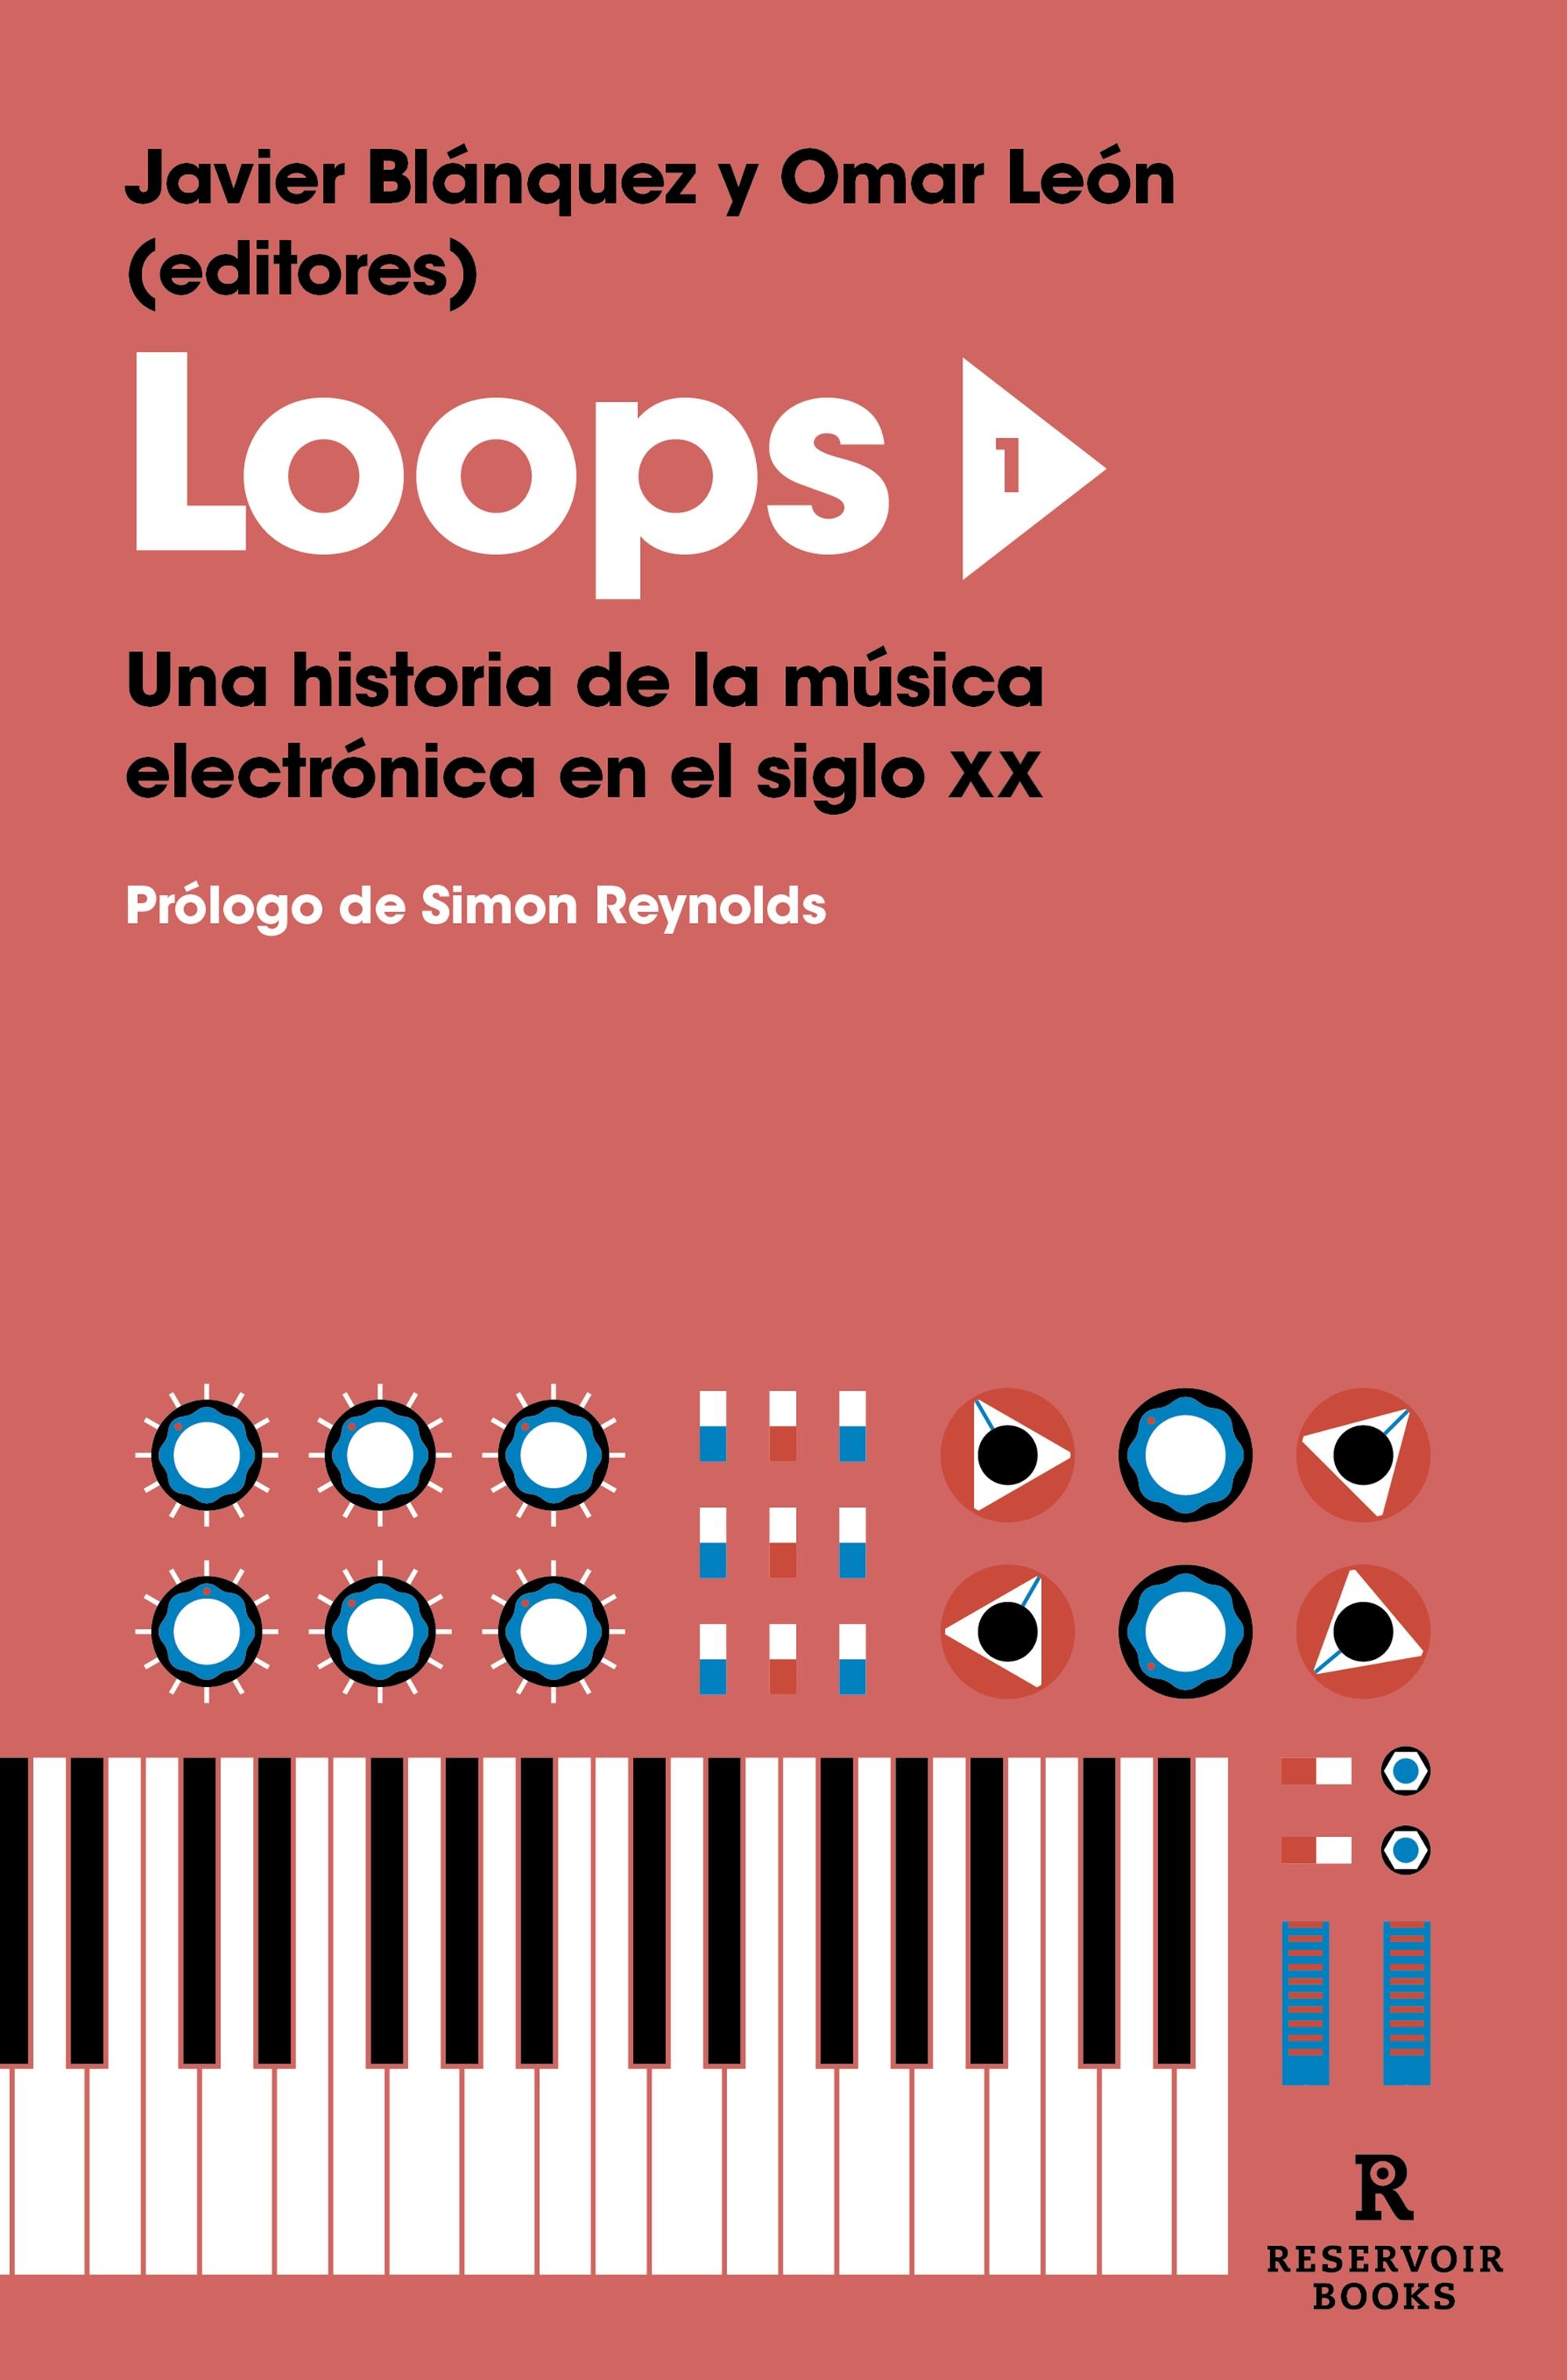 Loops 1 "Una Historia de la Música Electrónica en el Siglo Xx"